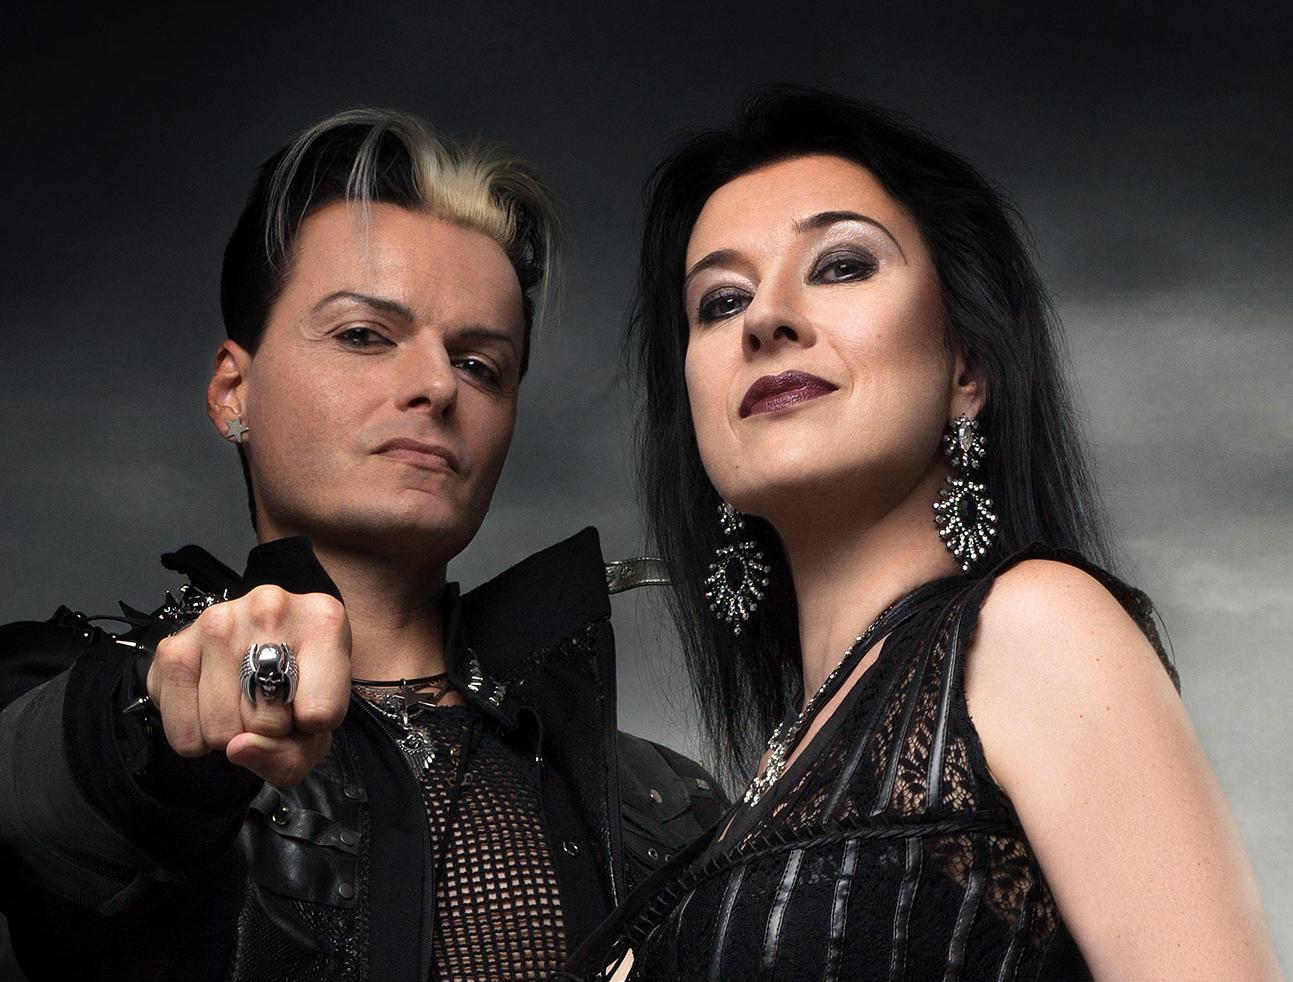 Lacrimosa, la icónica banda del gótico alemán, regresa a Colombia después de una década